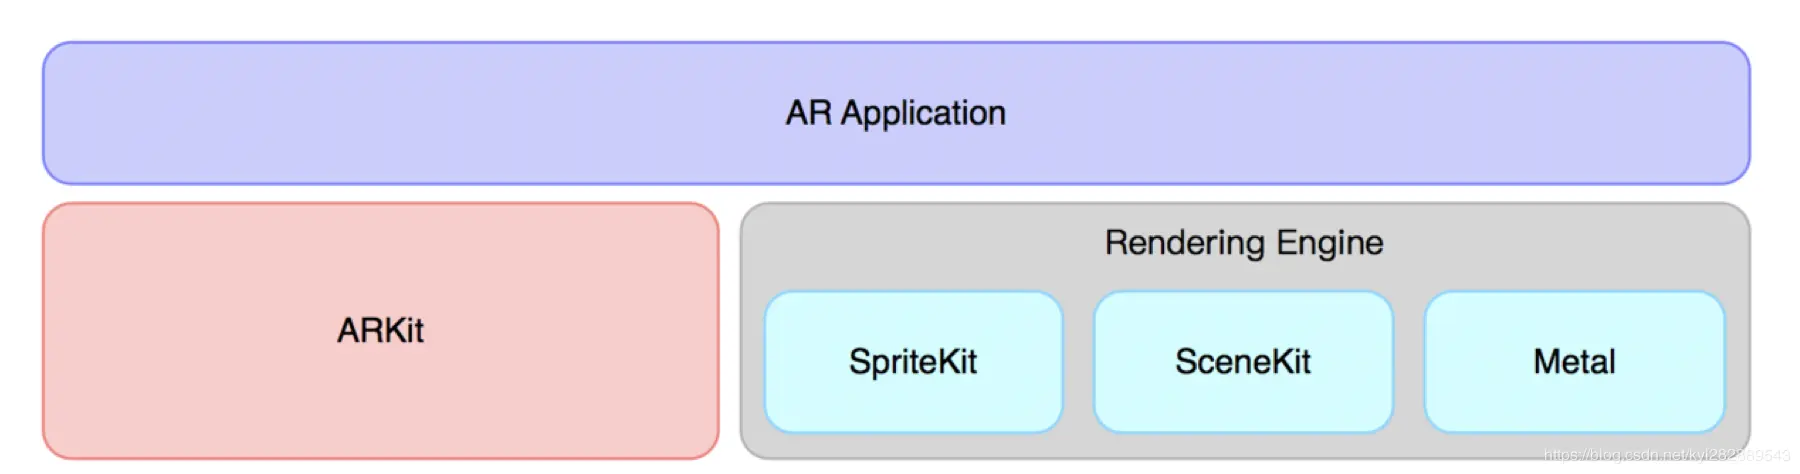 AR 应用通常由 ARKit 和渲染引擎两部分构成